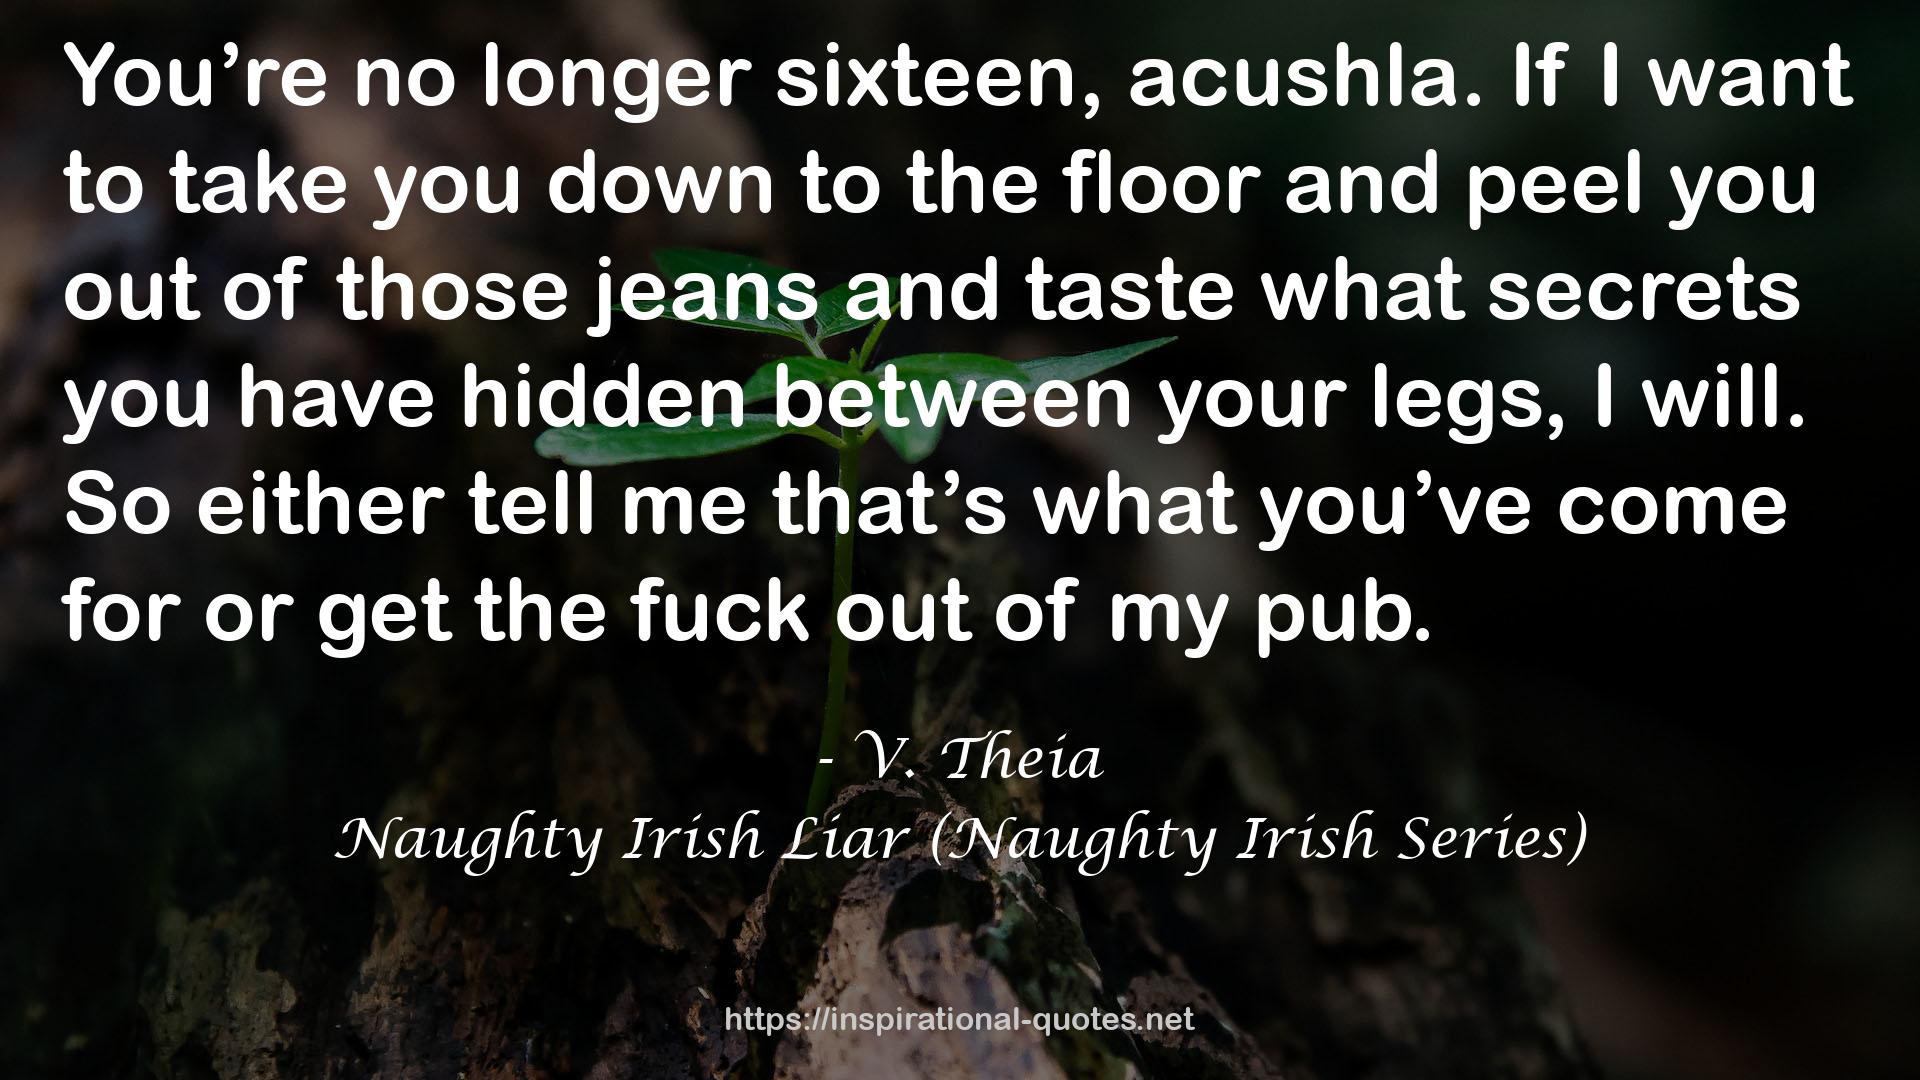 Naughty Irish Liar (Naughty Irish Series) QUOTES